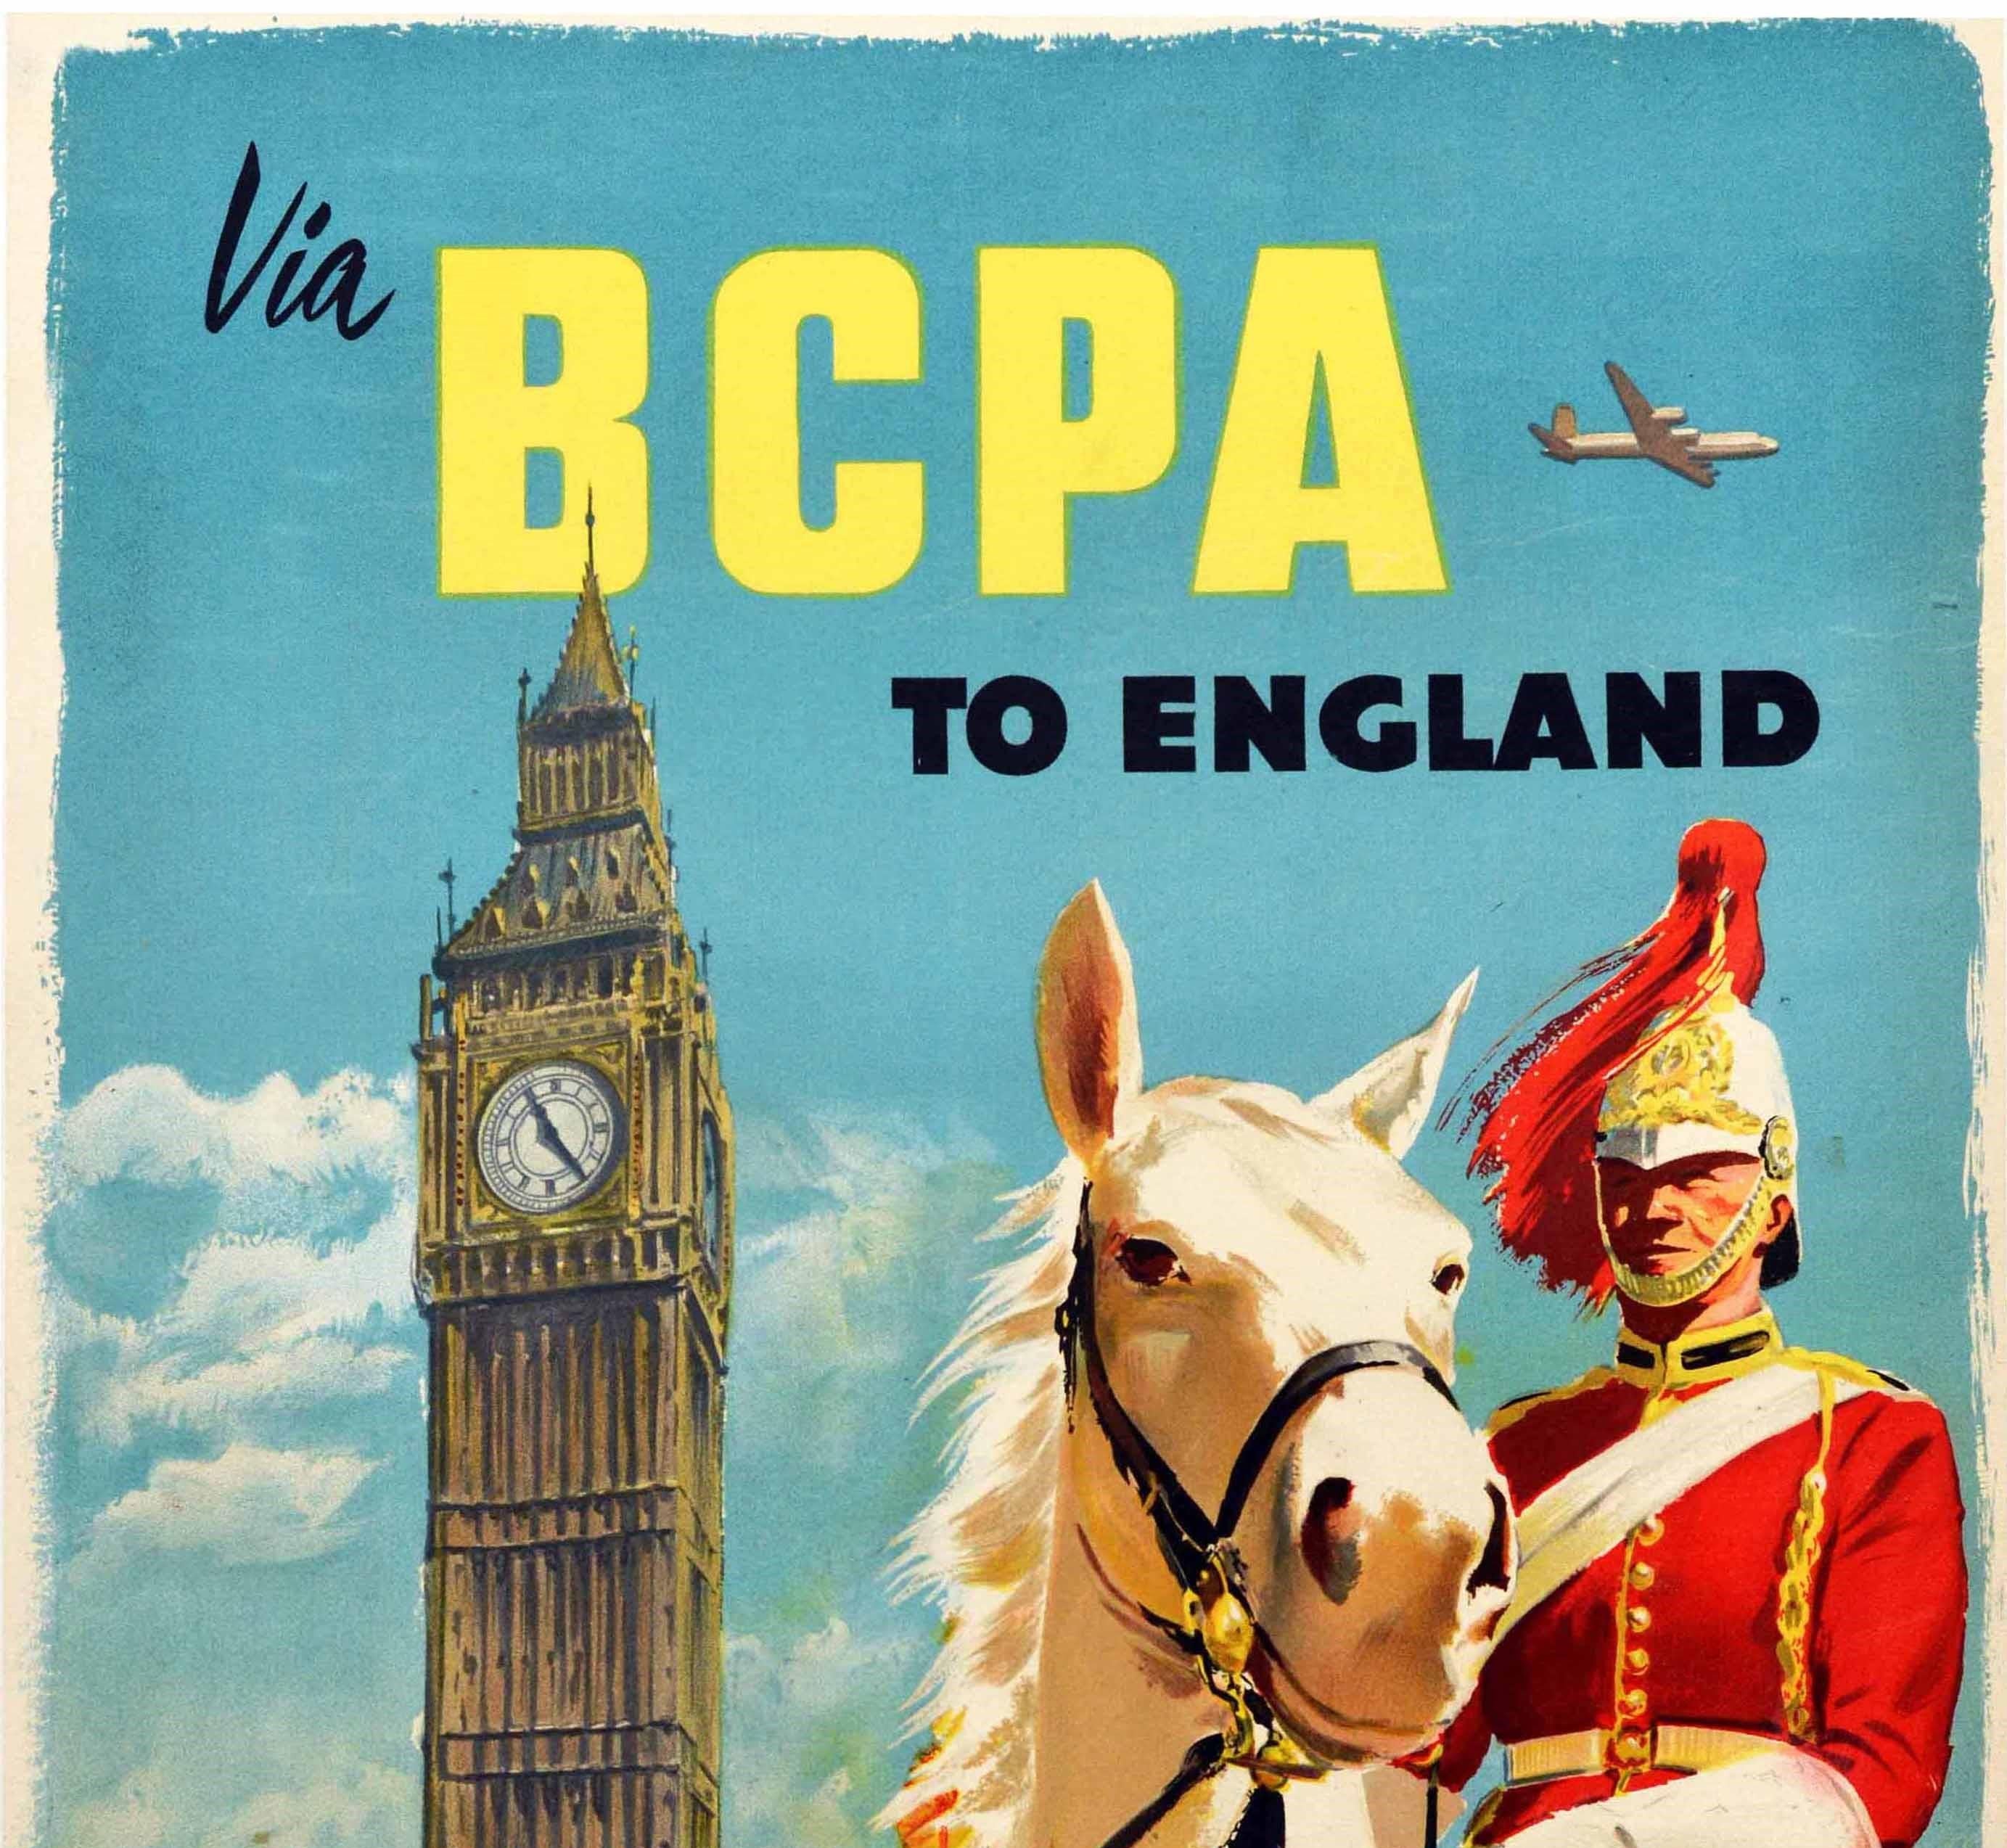 Affiche de voyage vintage originale annonçant les vols de British Commonwealth Pacific Airlines vers l'Angleterre - Via BCPA to England. Le design présente une illustration d'une garde royale montée sur un cheval blanc du Household Cavalry Regiment